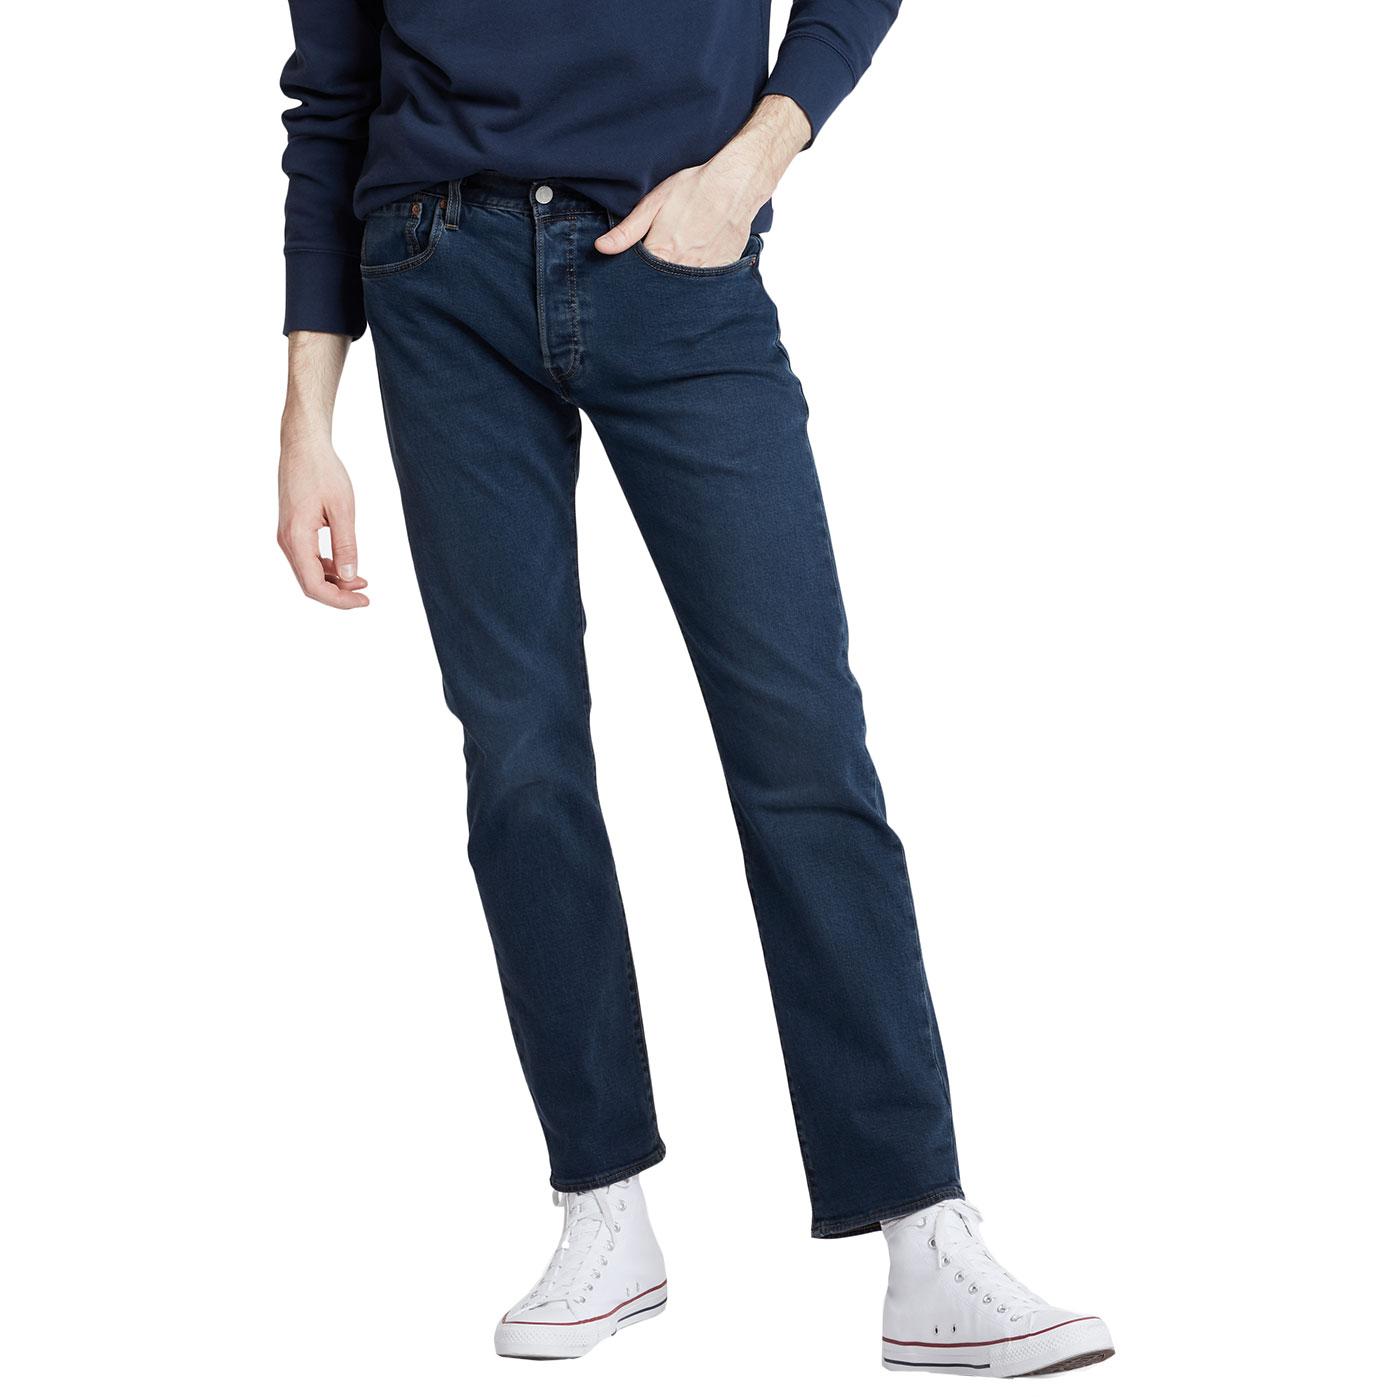 levis 501 denim jeans